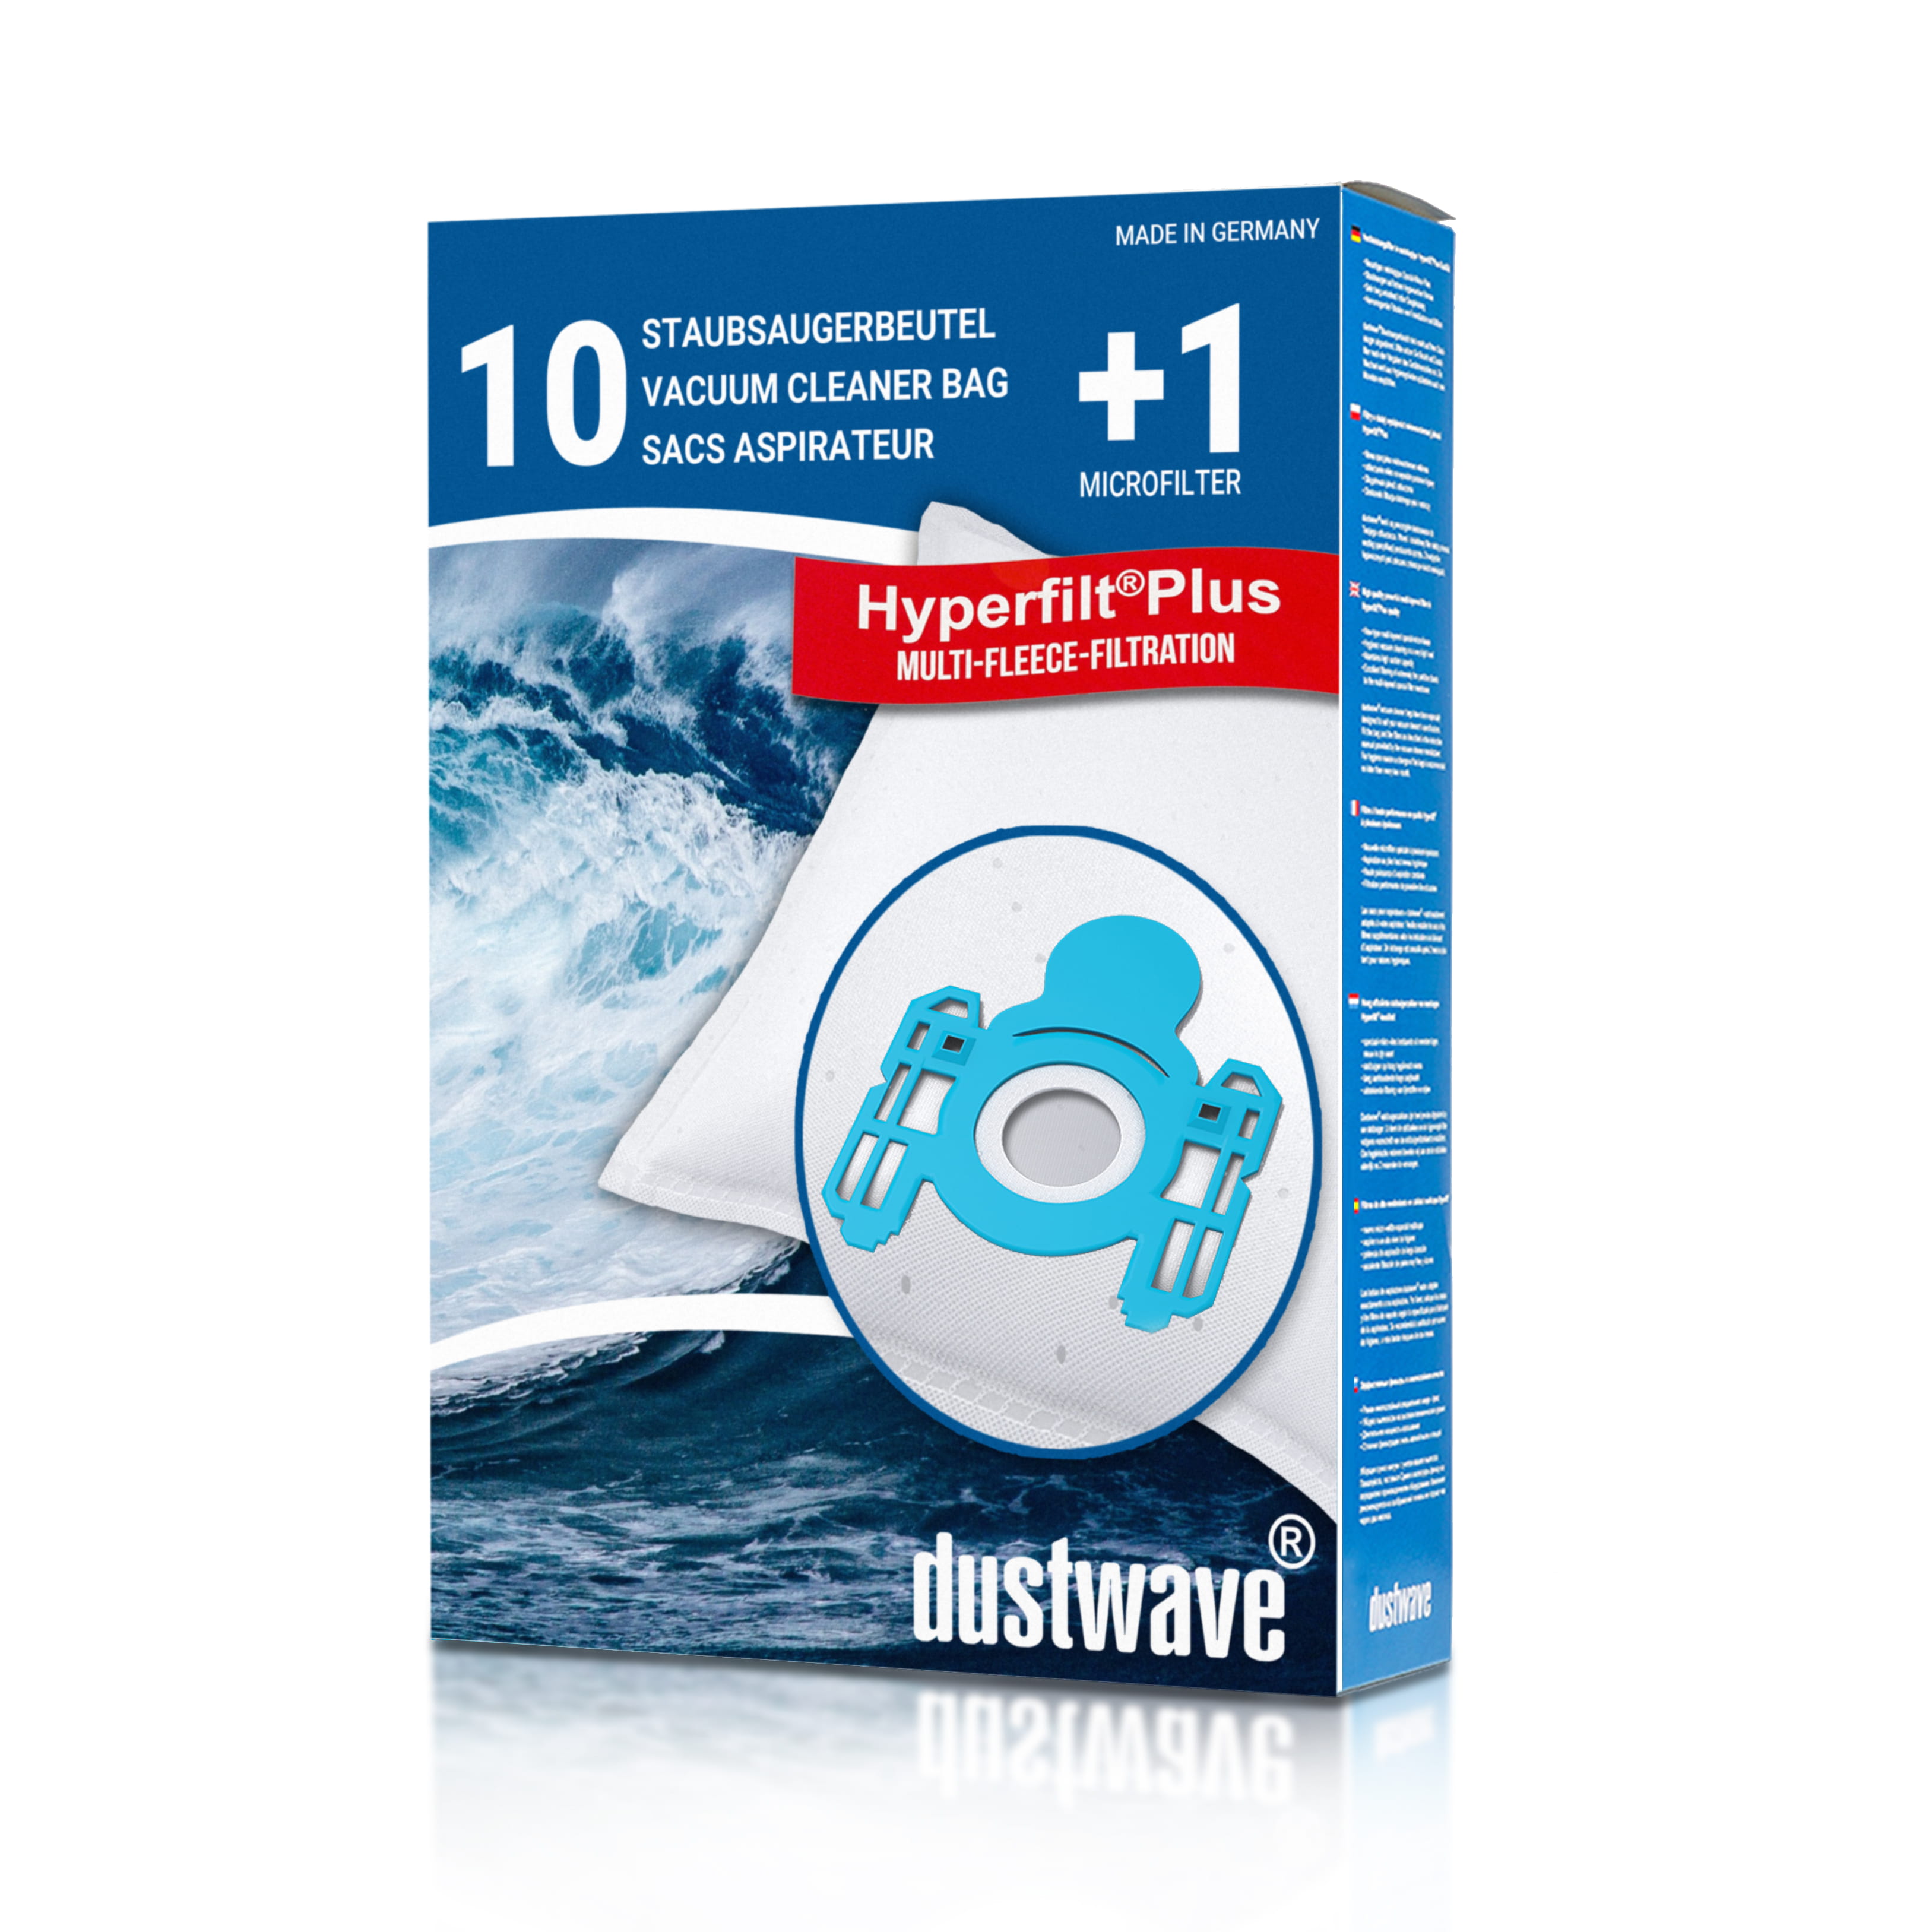 Dustwave® 10 Staubsaugerbeutel für AEG Vampyr Compact Electronic - hocheffizient, mehrlagiges Mikrovlies mit Hygieneverschluss - Made in Germany